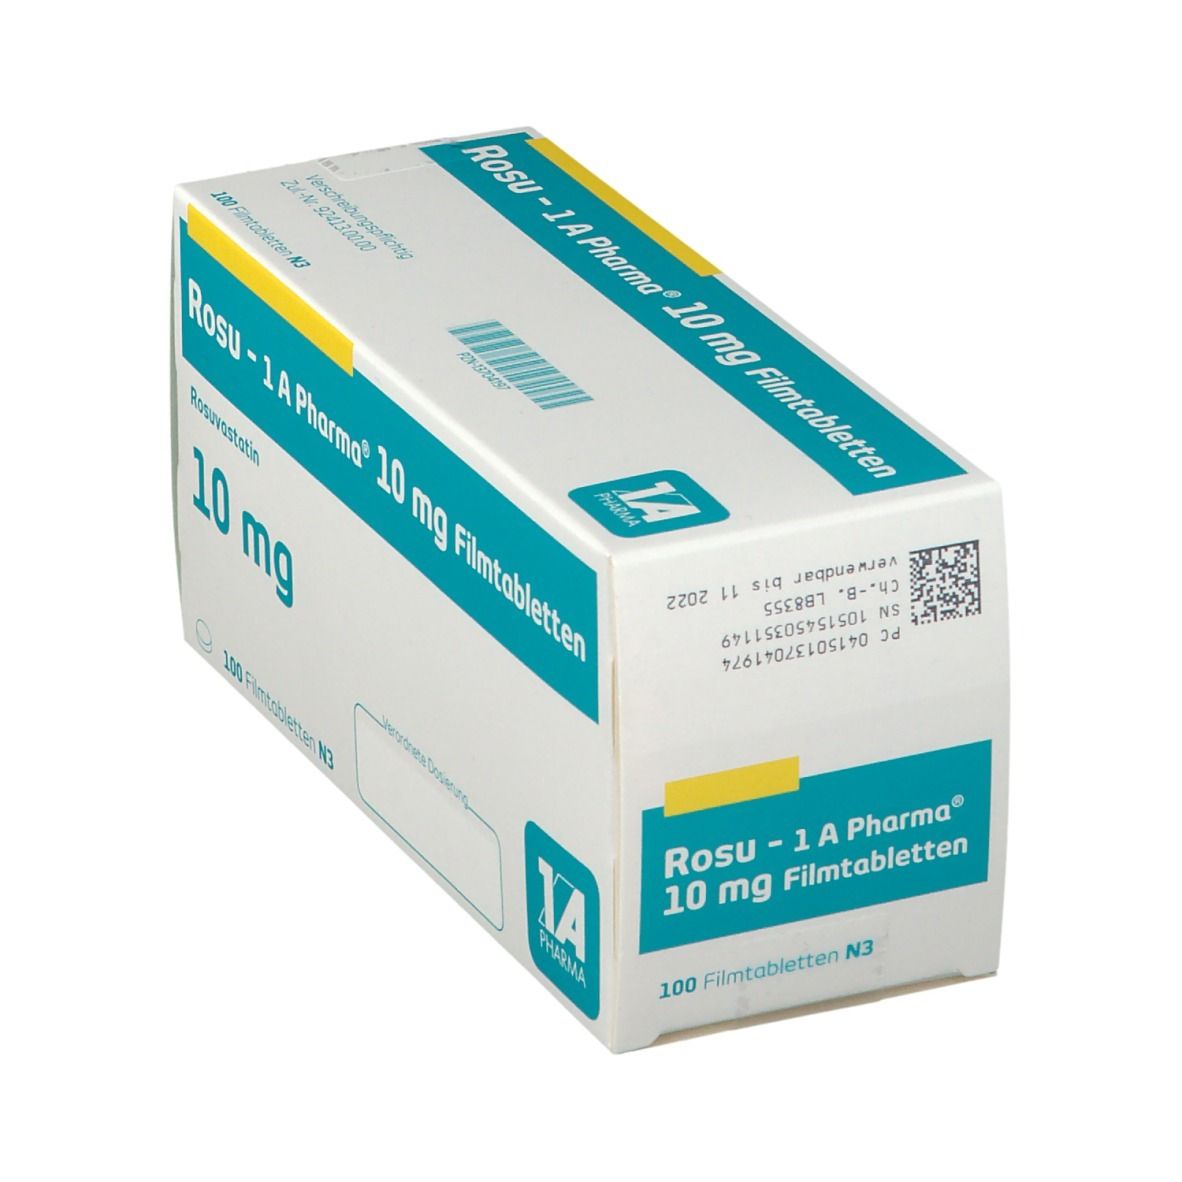 Rosu - 1 A Pharma® 10 mg